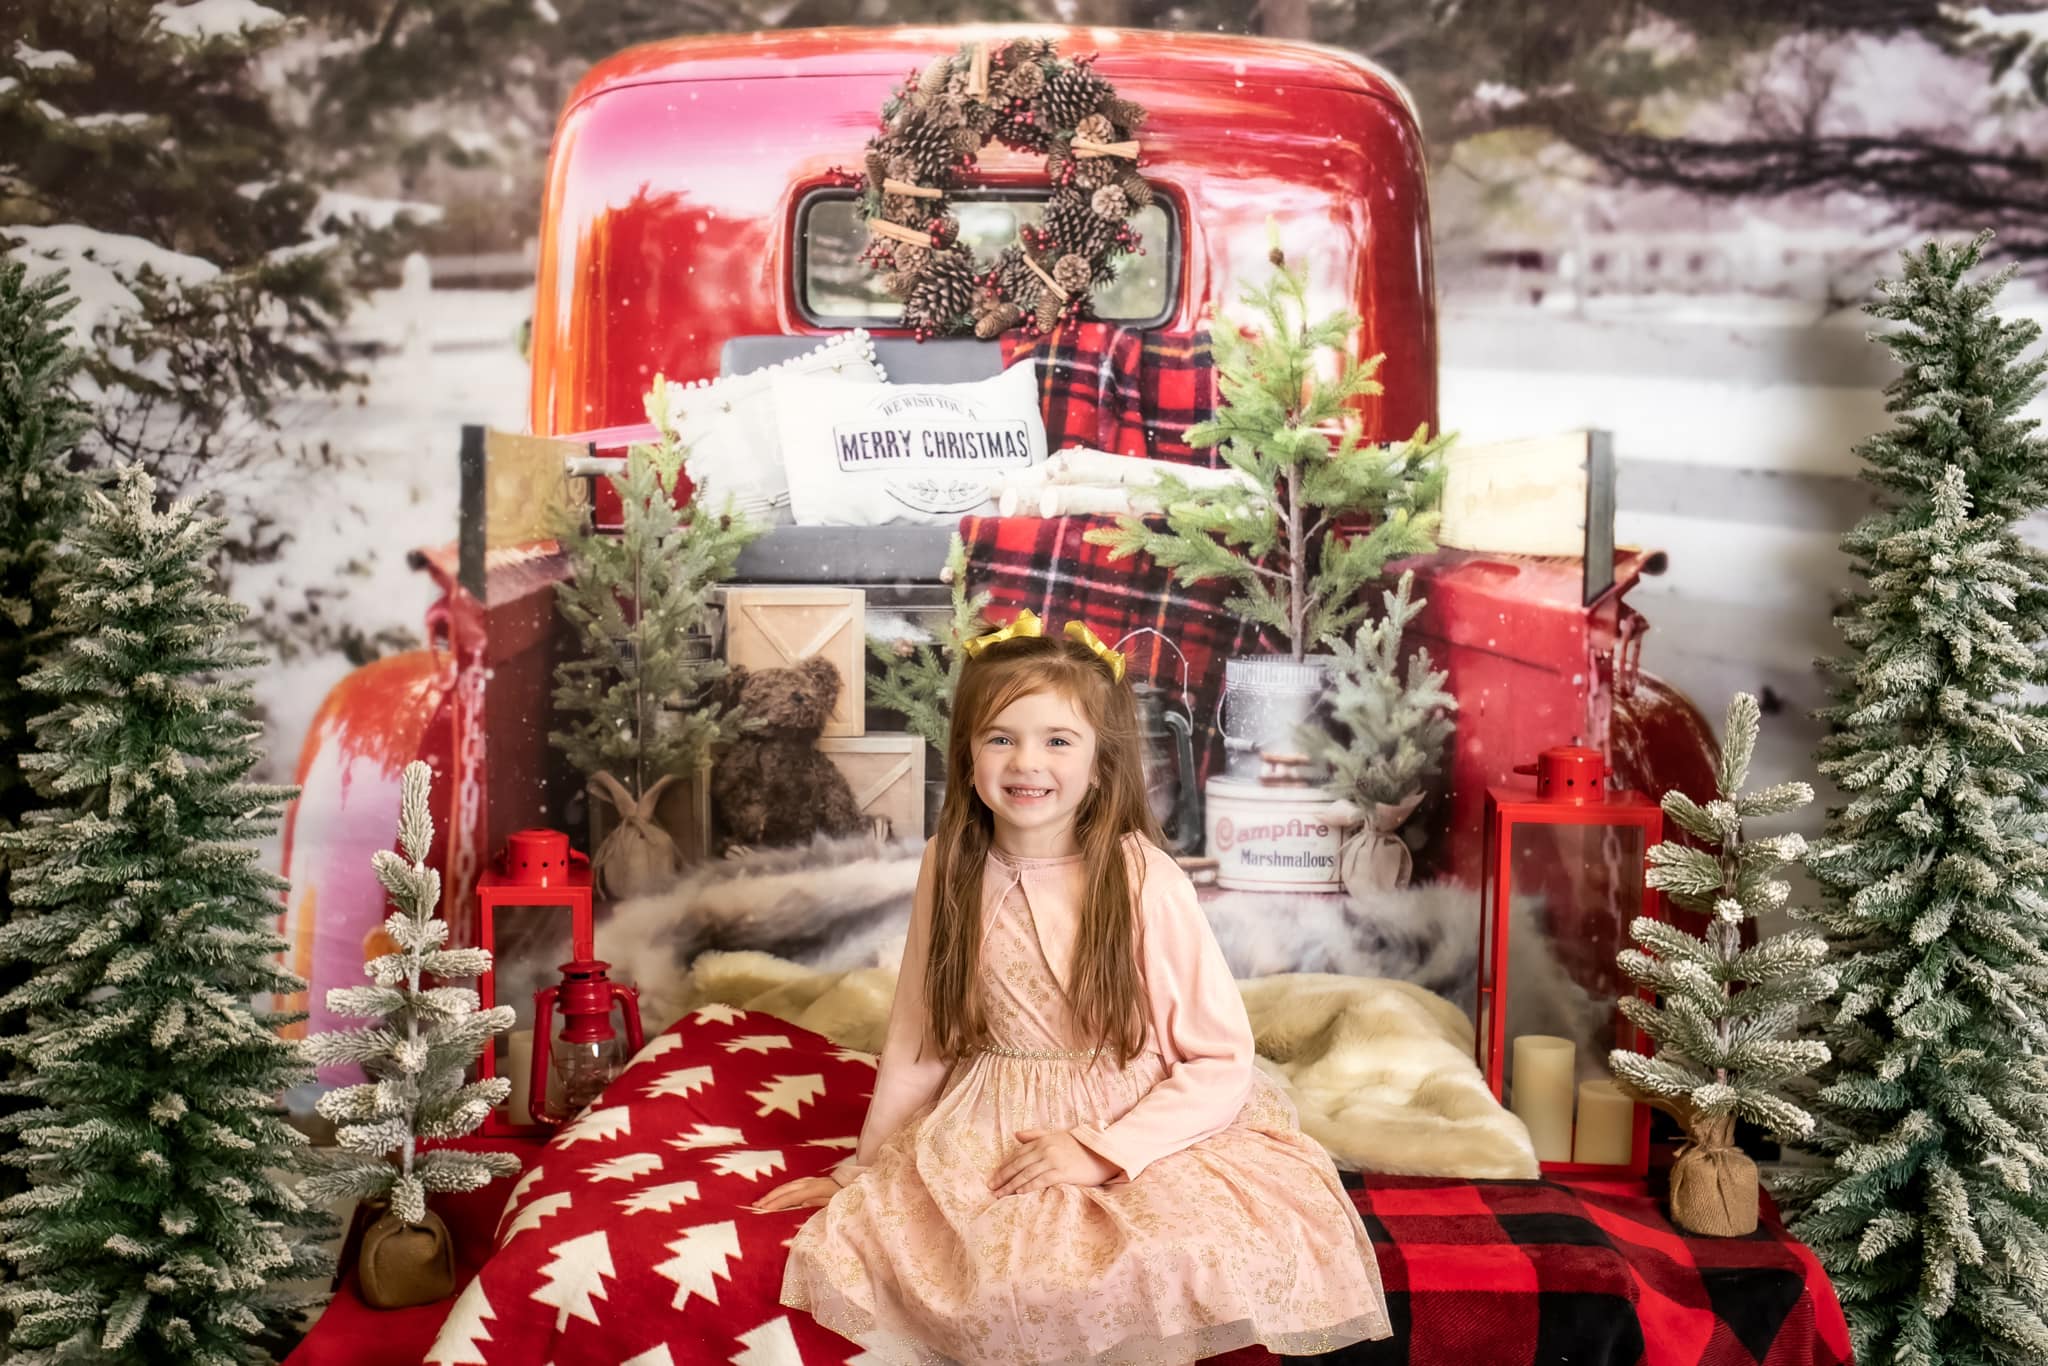 Camion rosso di Natale su sfondo innevato in RTS progettato da Mandy Ringe Photography